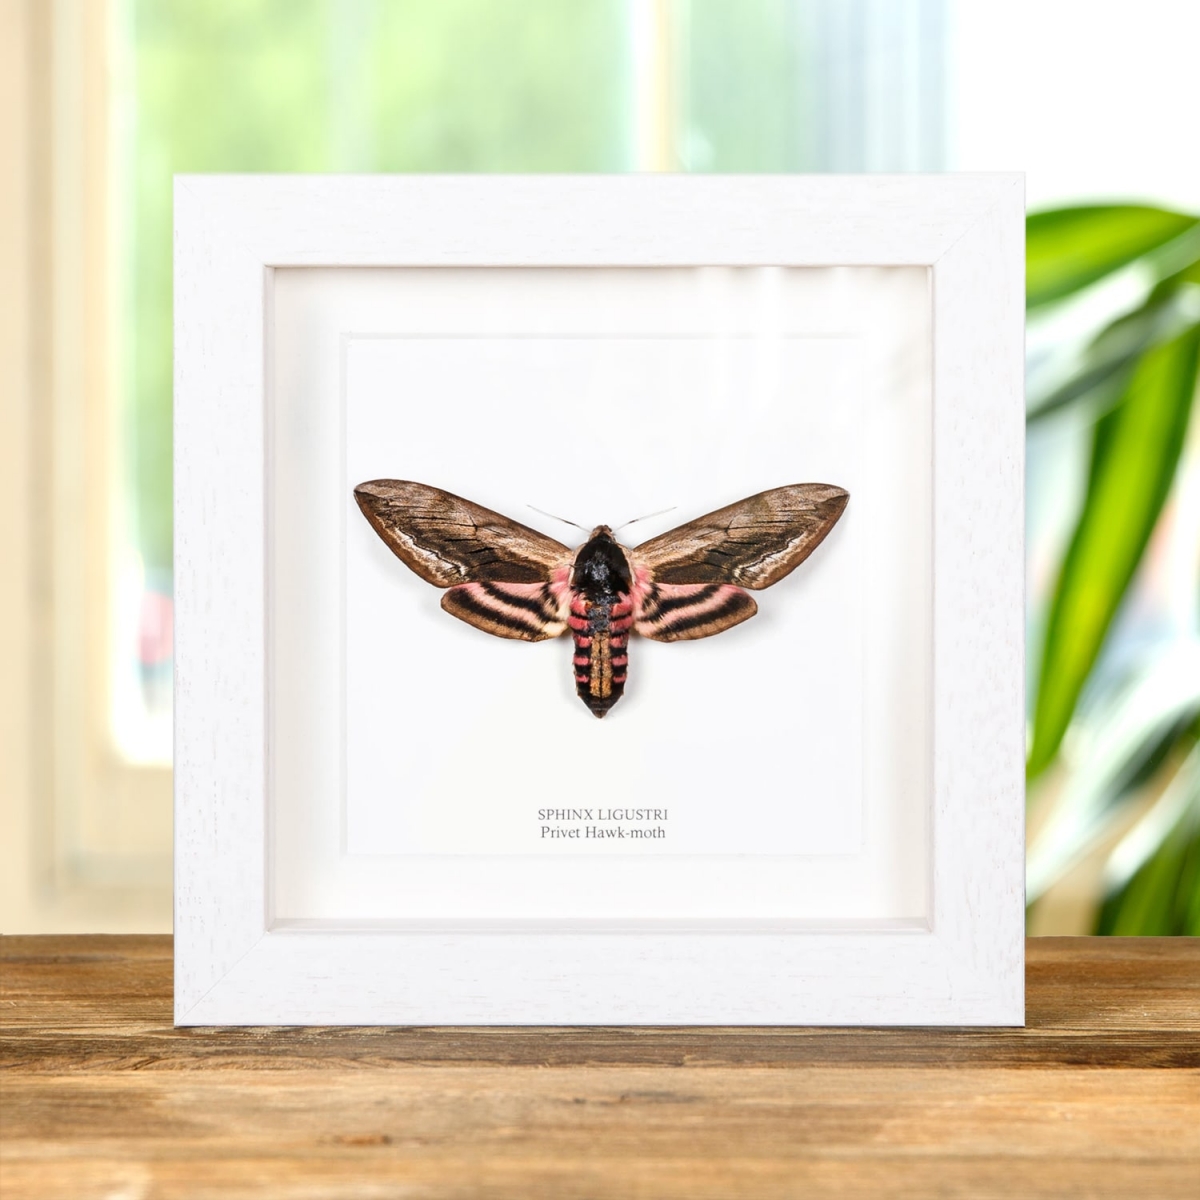 Privet Hawk Moth in Box Frame (Sphinx ligustri)